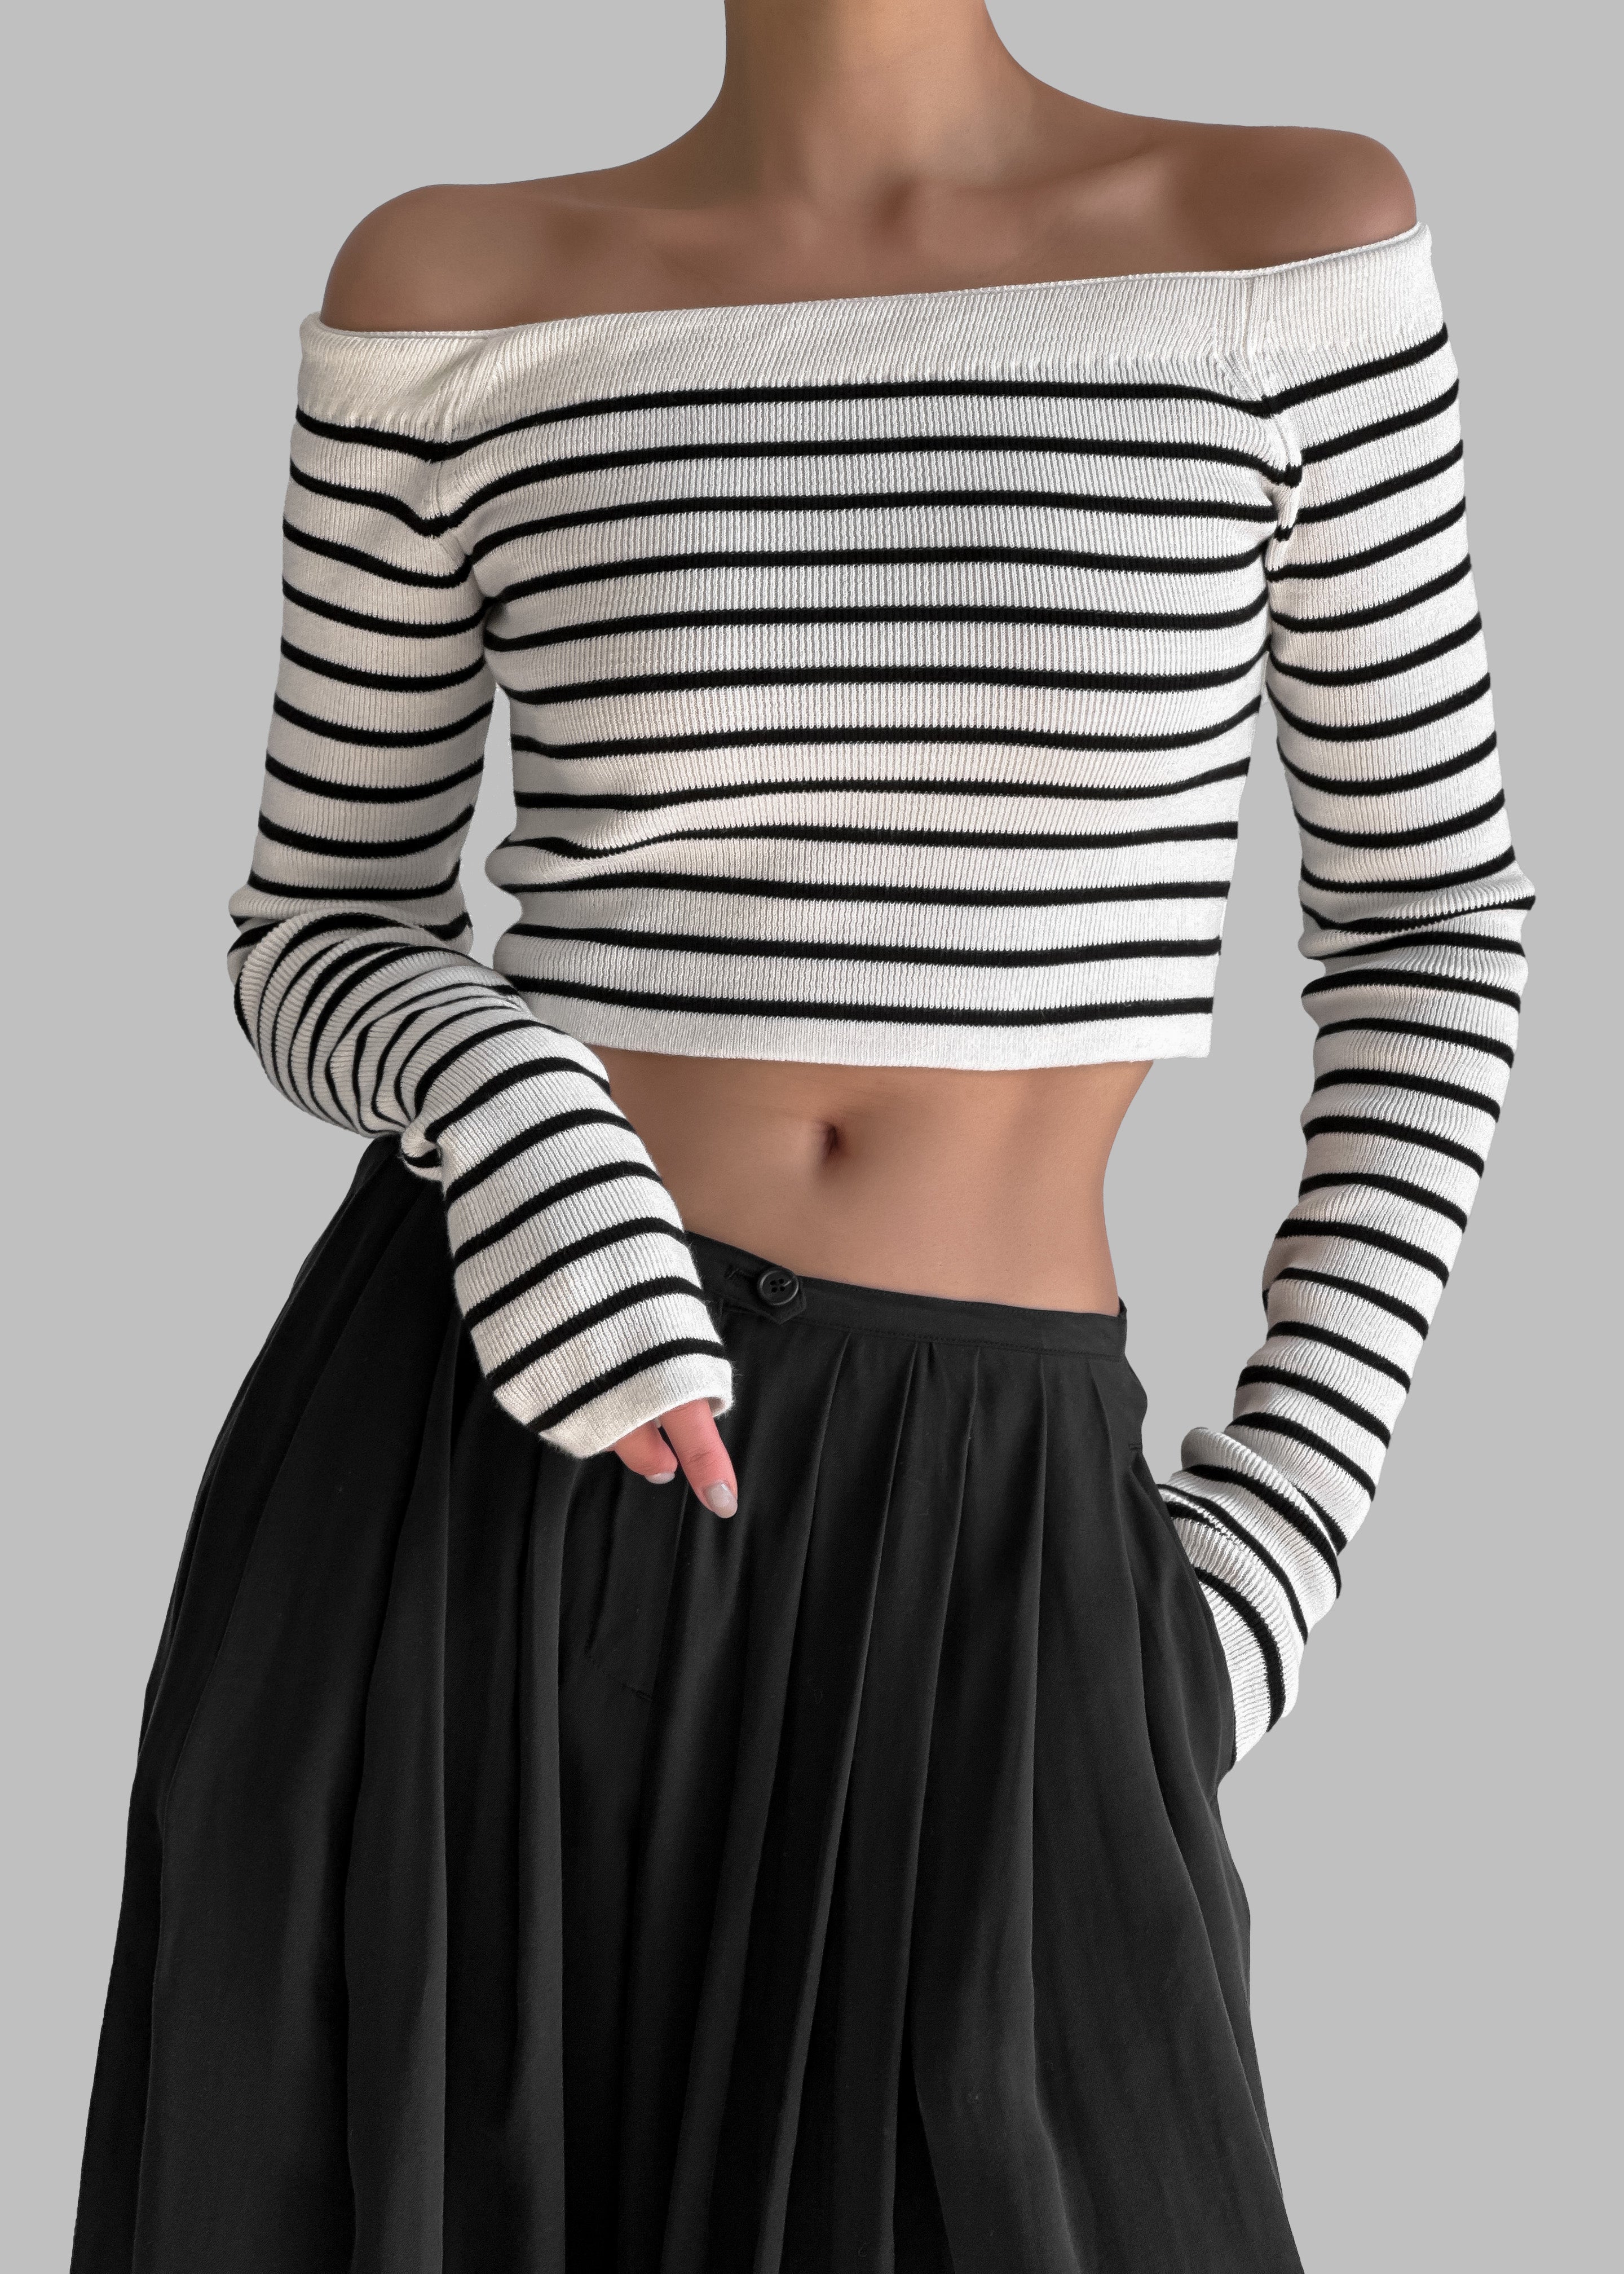 Coco White Off Shoulder Sweater - Black Stripe - 4